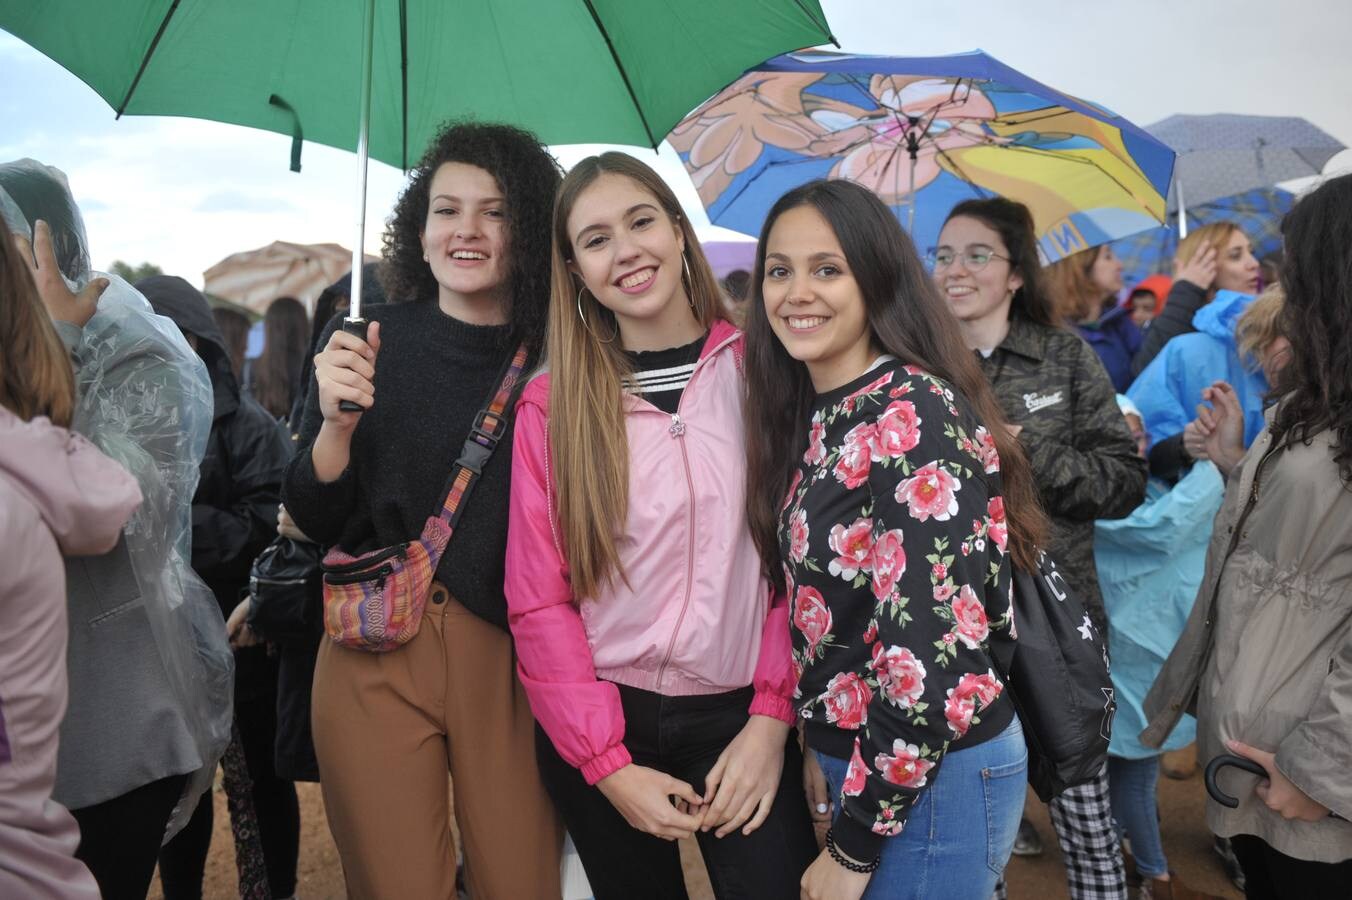 Fotos: Asistentes al concierto de Operación Triunfo en Valladolid (2/2)